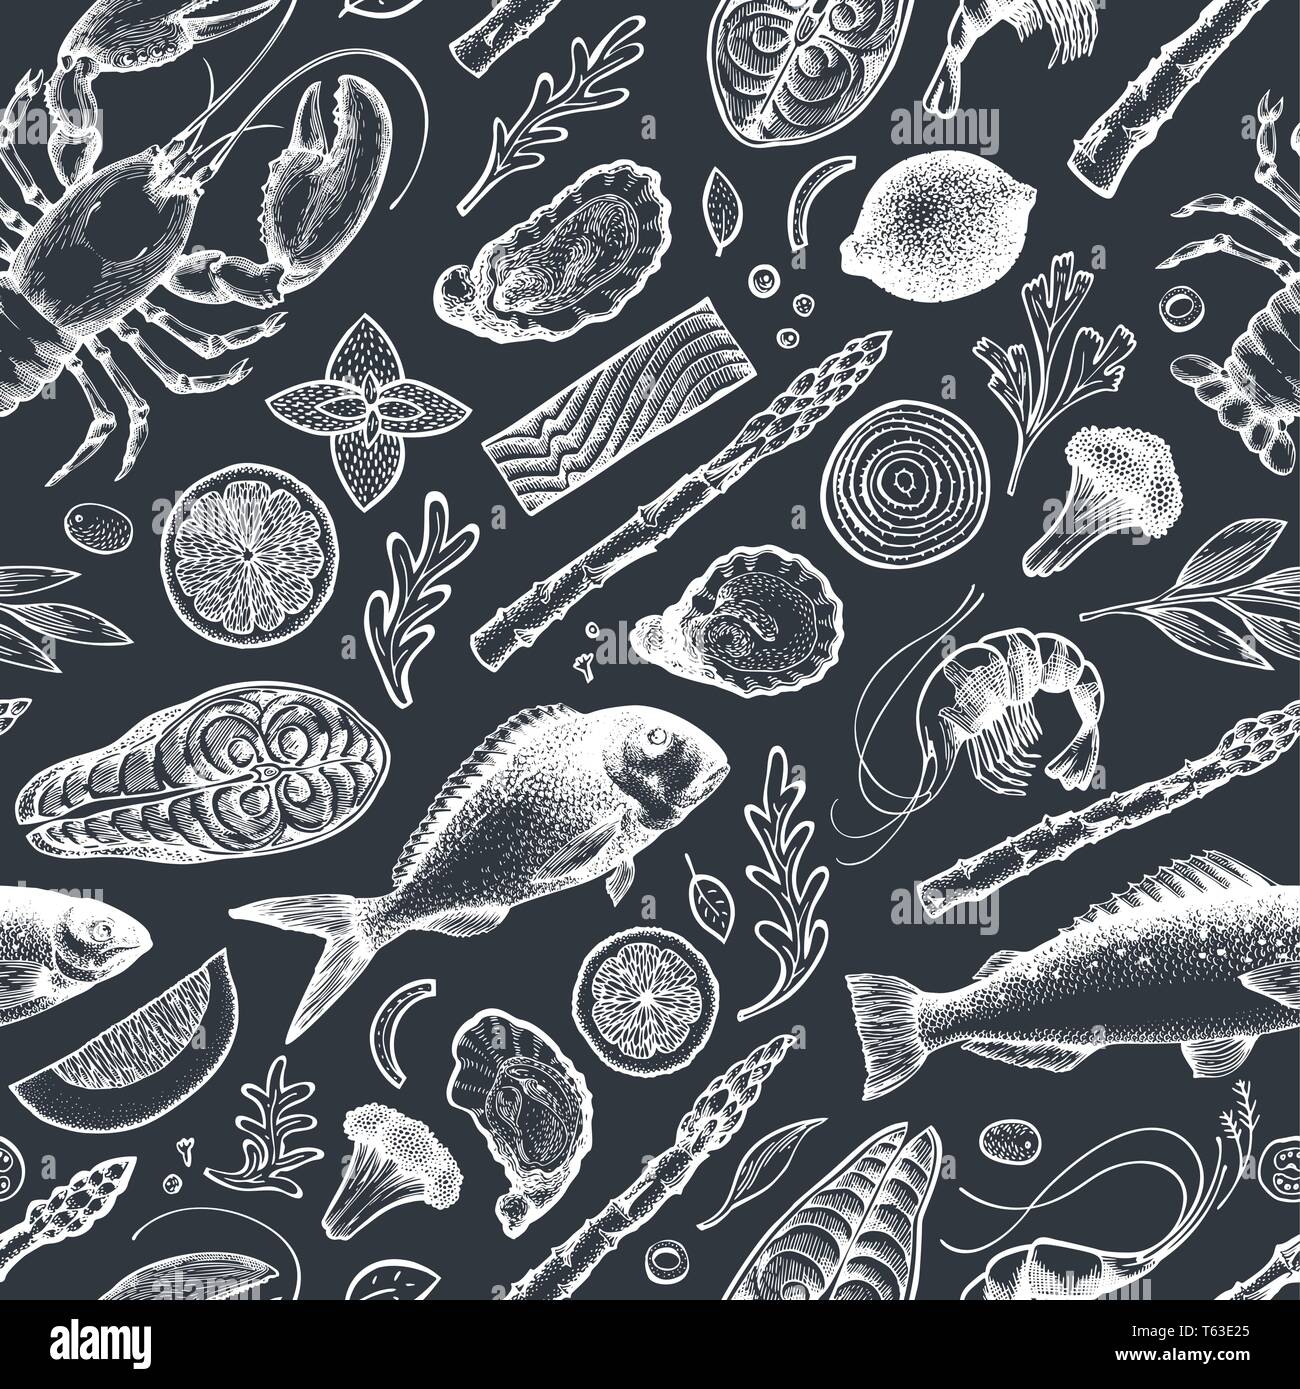 Les fruits de mer et poissons modèle transparente. Hand drawn vector illustration sur tableau. Peut être utilisé pour la conception, l'emballage, des recettes menu, étiquette, le marché aux poissons, Illustration de Vecteur